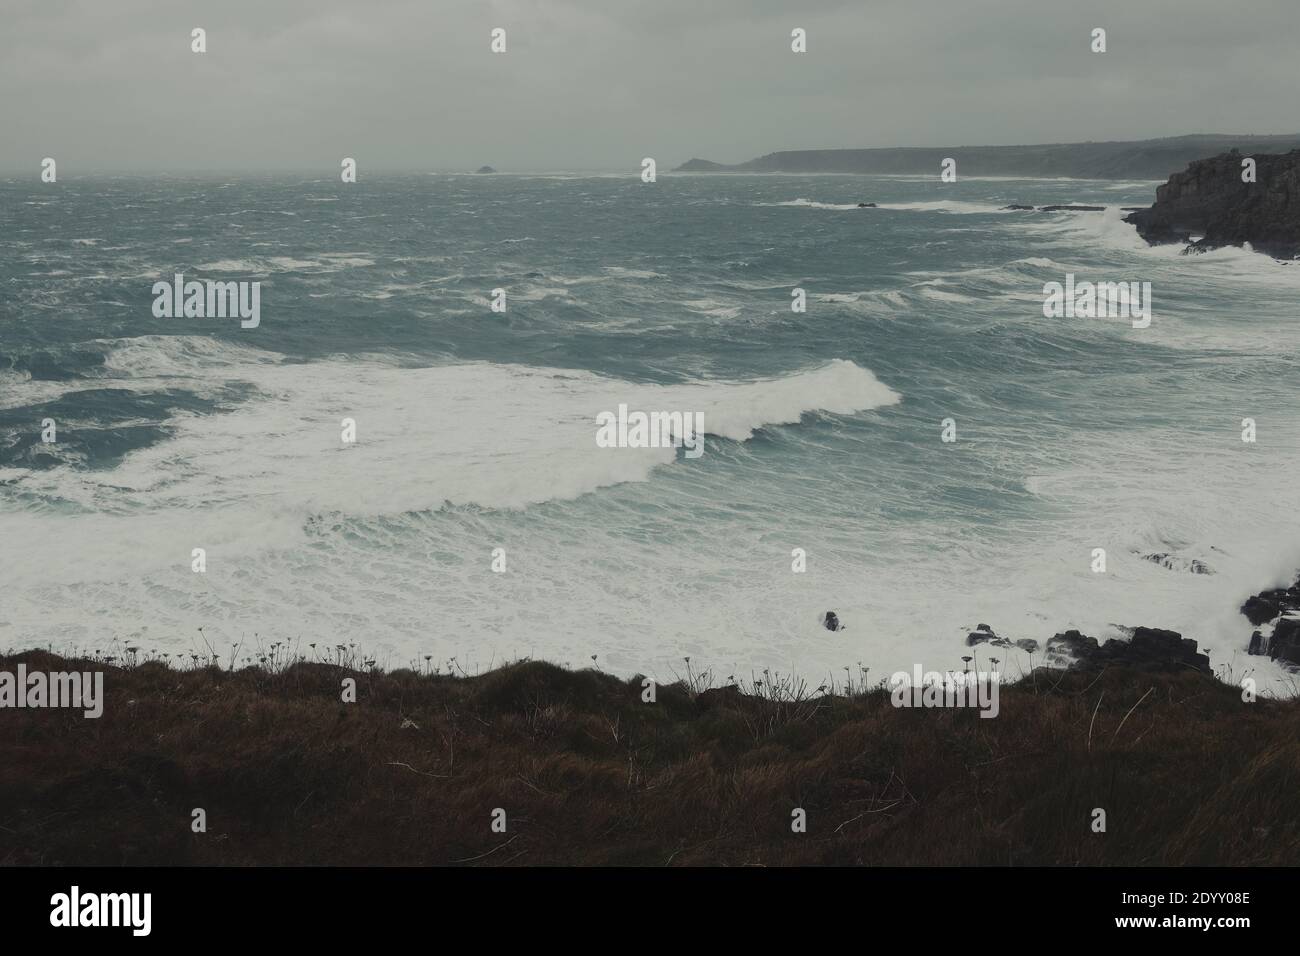 Mari burrasdi e onde dell'oceano Atlantico che si infrangono sulle rocce a Lands End Cornwall, Regno Unito dopo che i venti della forza delle balle di Storm Bella si propagano attraverso la costa Foto Stock